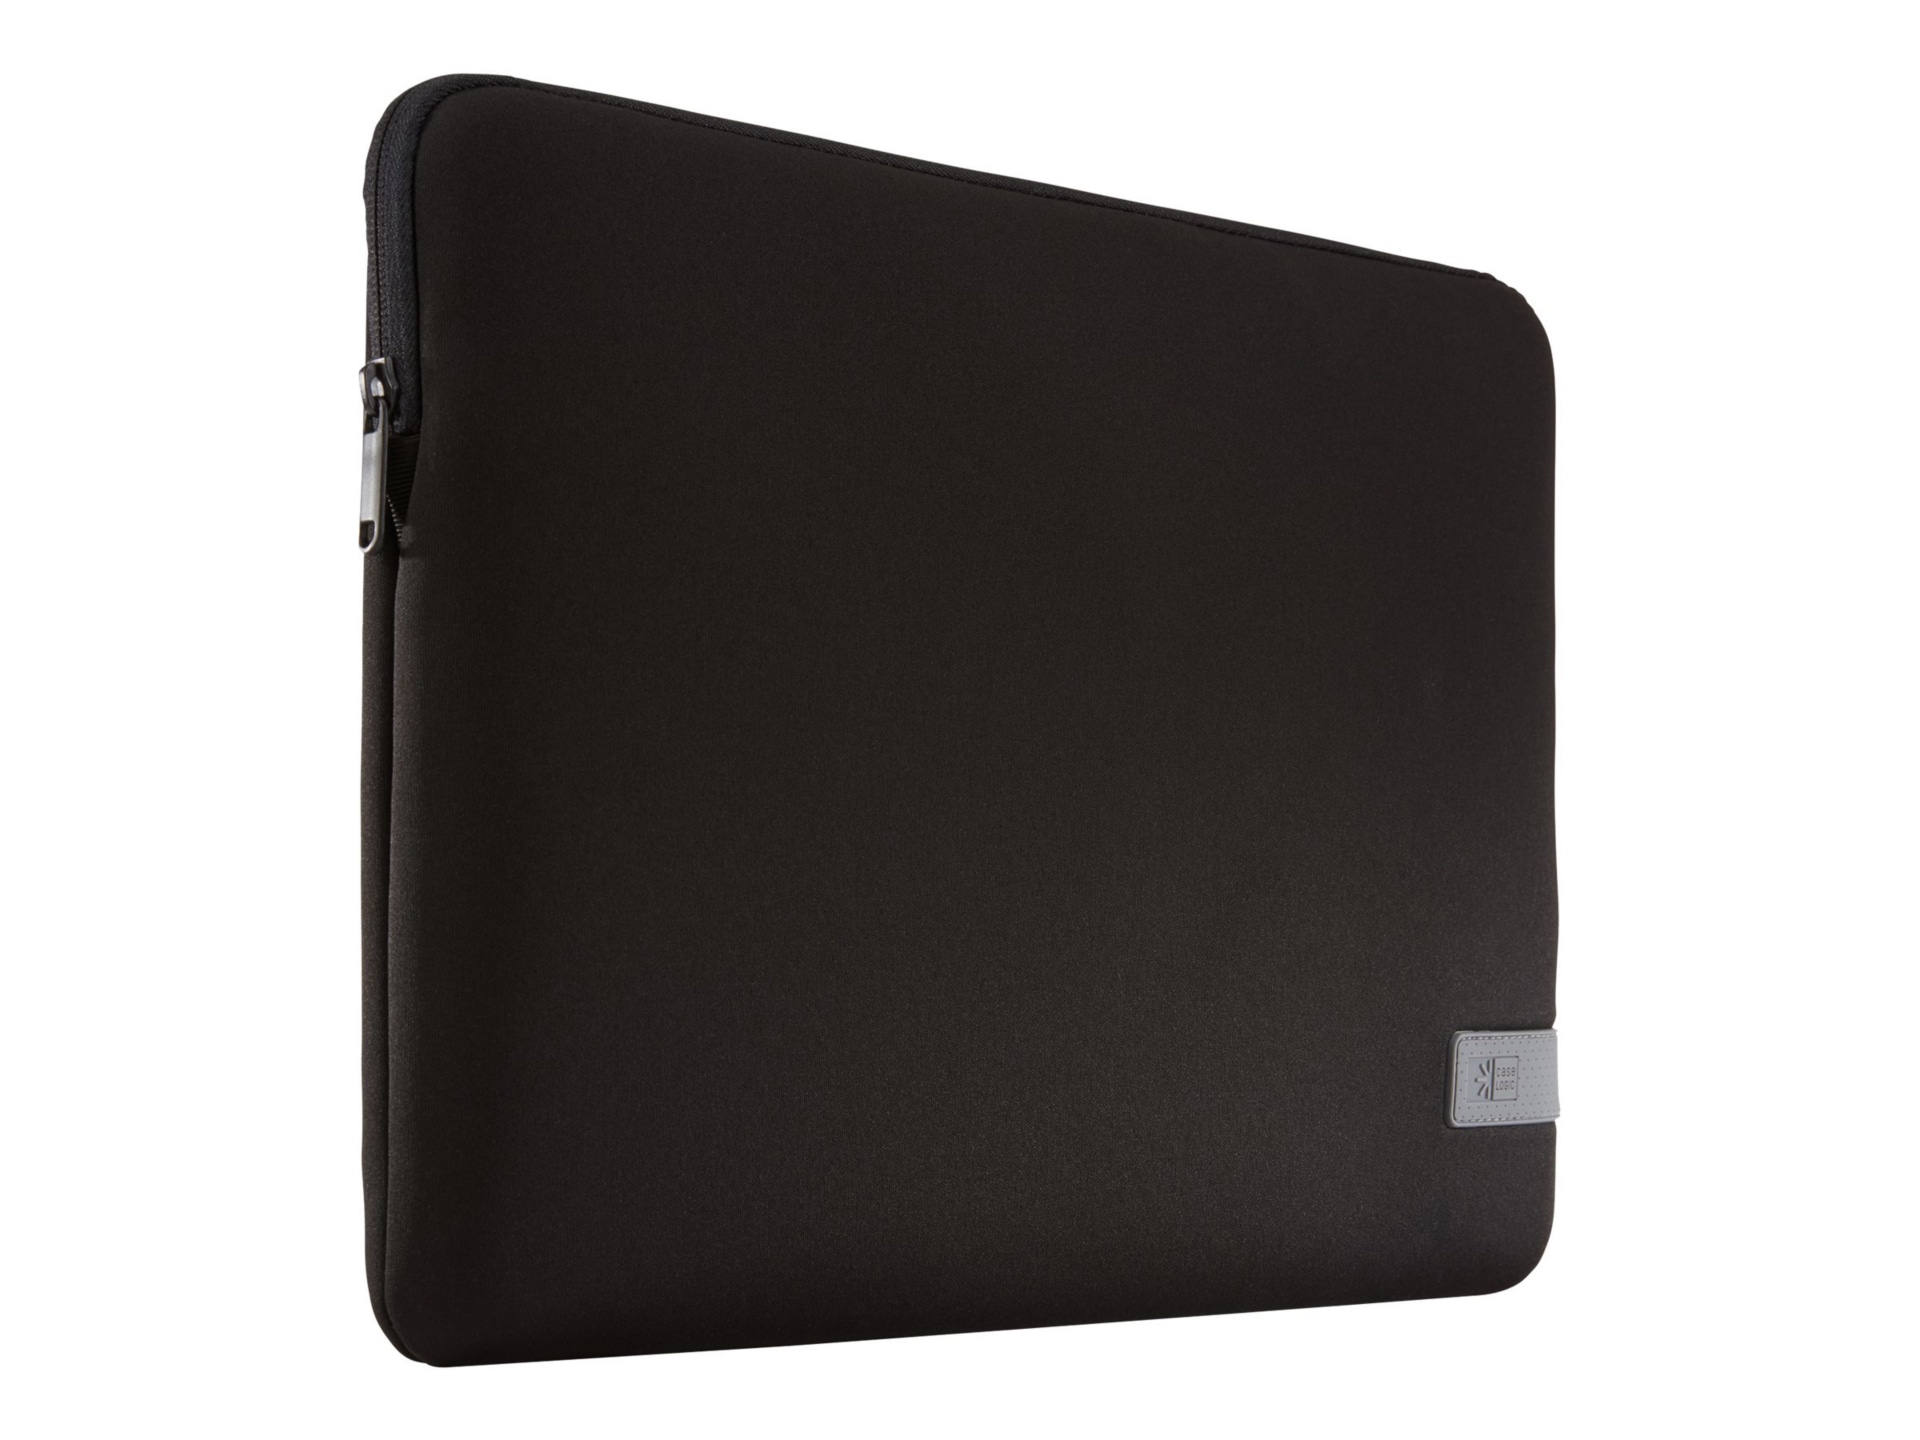  Case Logic Laptop Sleeve 15-16, Black : Electronics